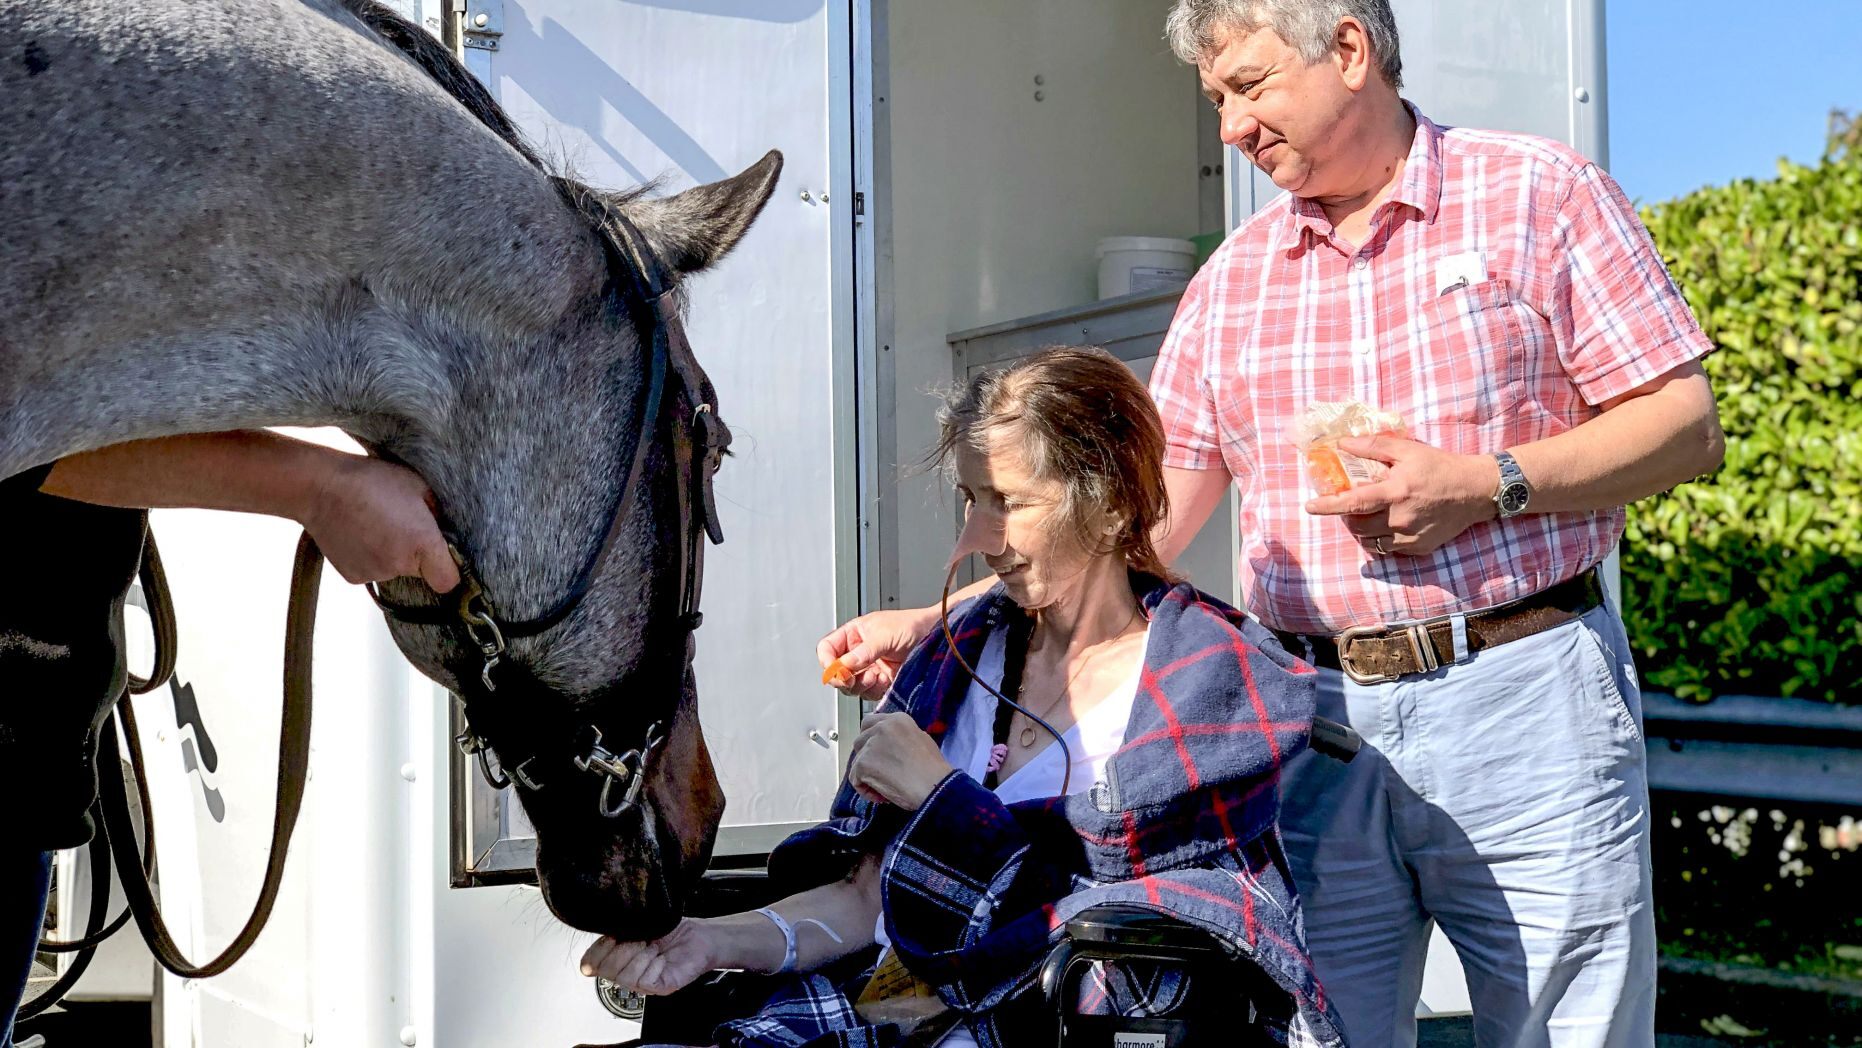   Tracey dù đang điều trị ung thư hiếm gặp nhưng vẫn được gặp con ngựa yêu quý đã gắn bó 17 năm qua (Ảnh Internet)  